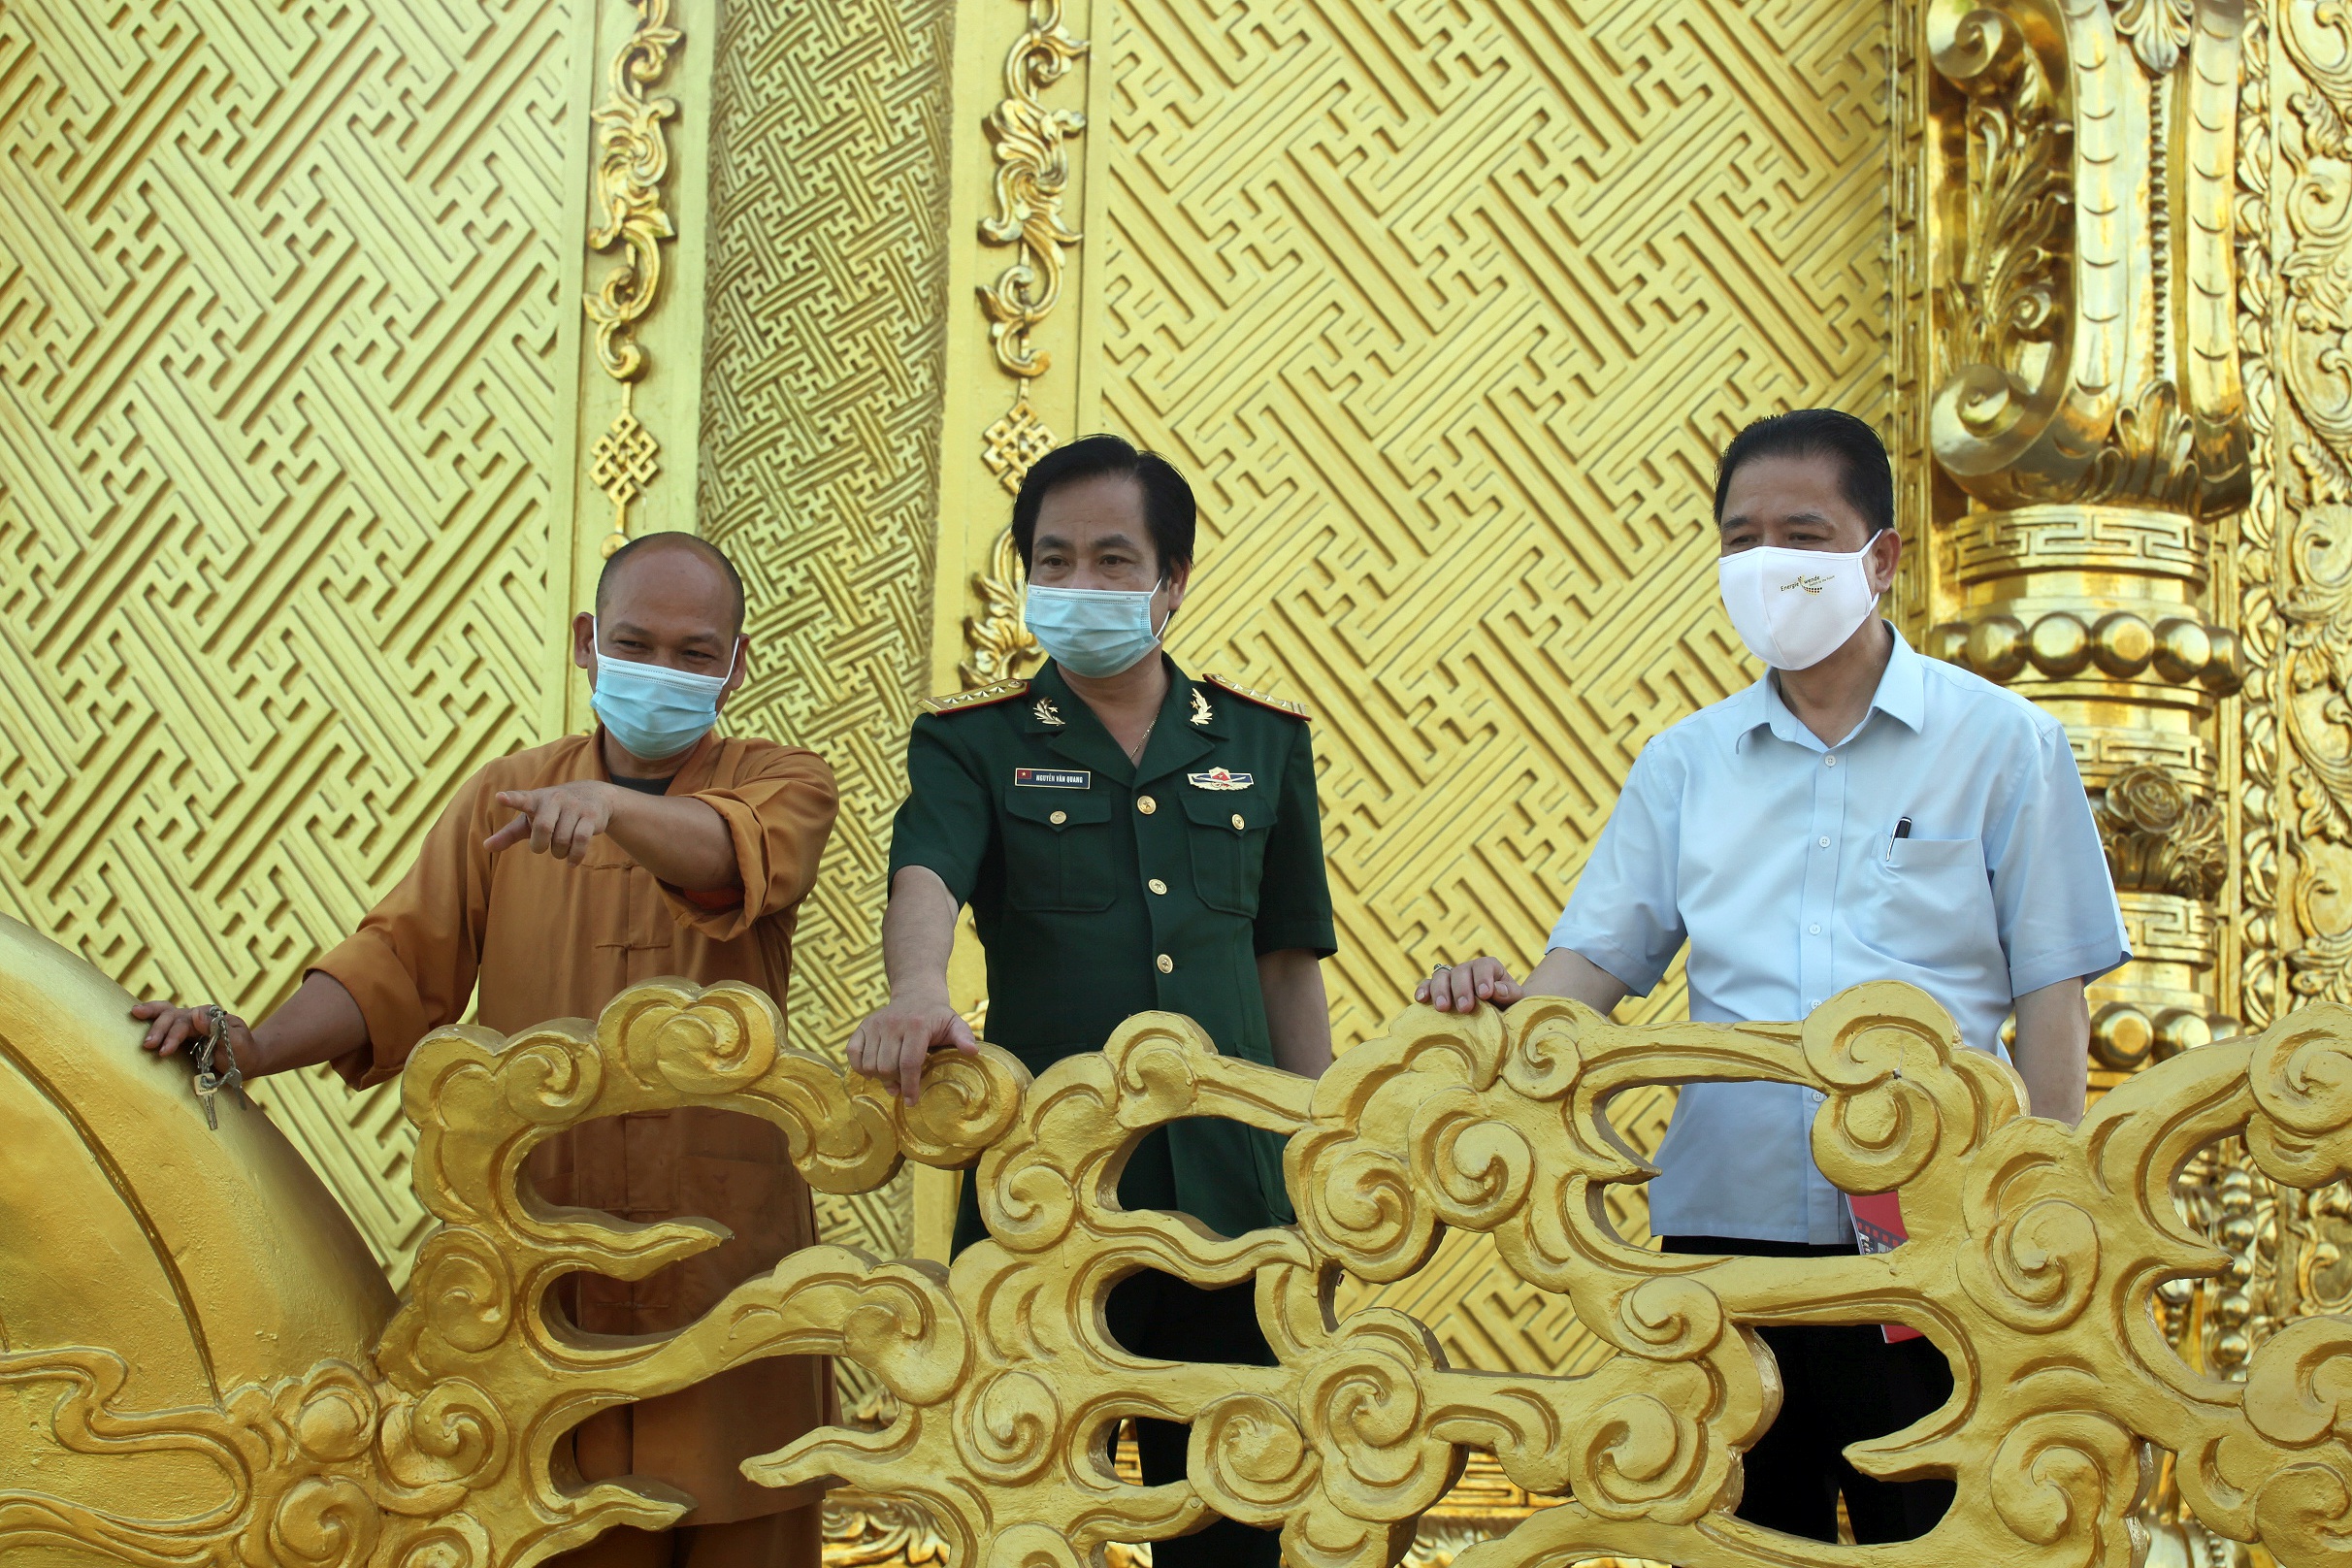 Ngôi chùa dát đầy vàng là vàng ngay gần Thủ đô Hà Nội không phải ai cũng biết - Ảnh 11.